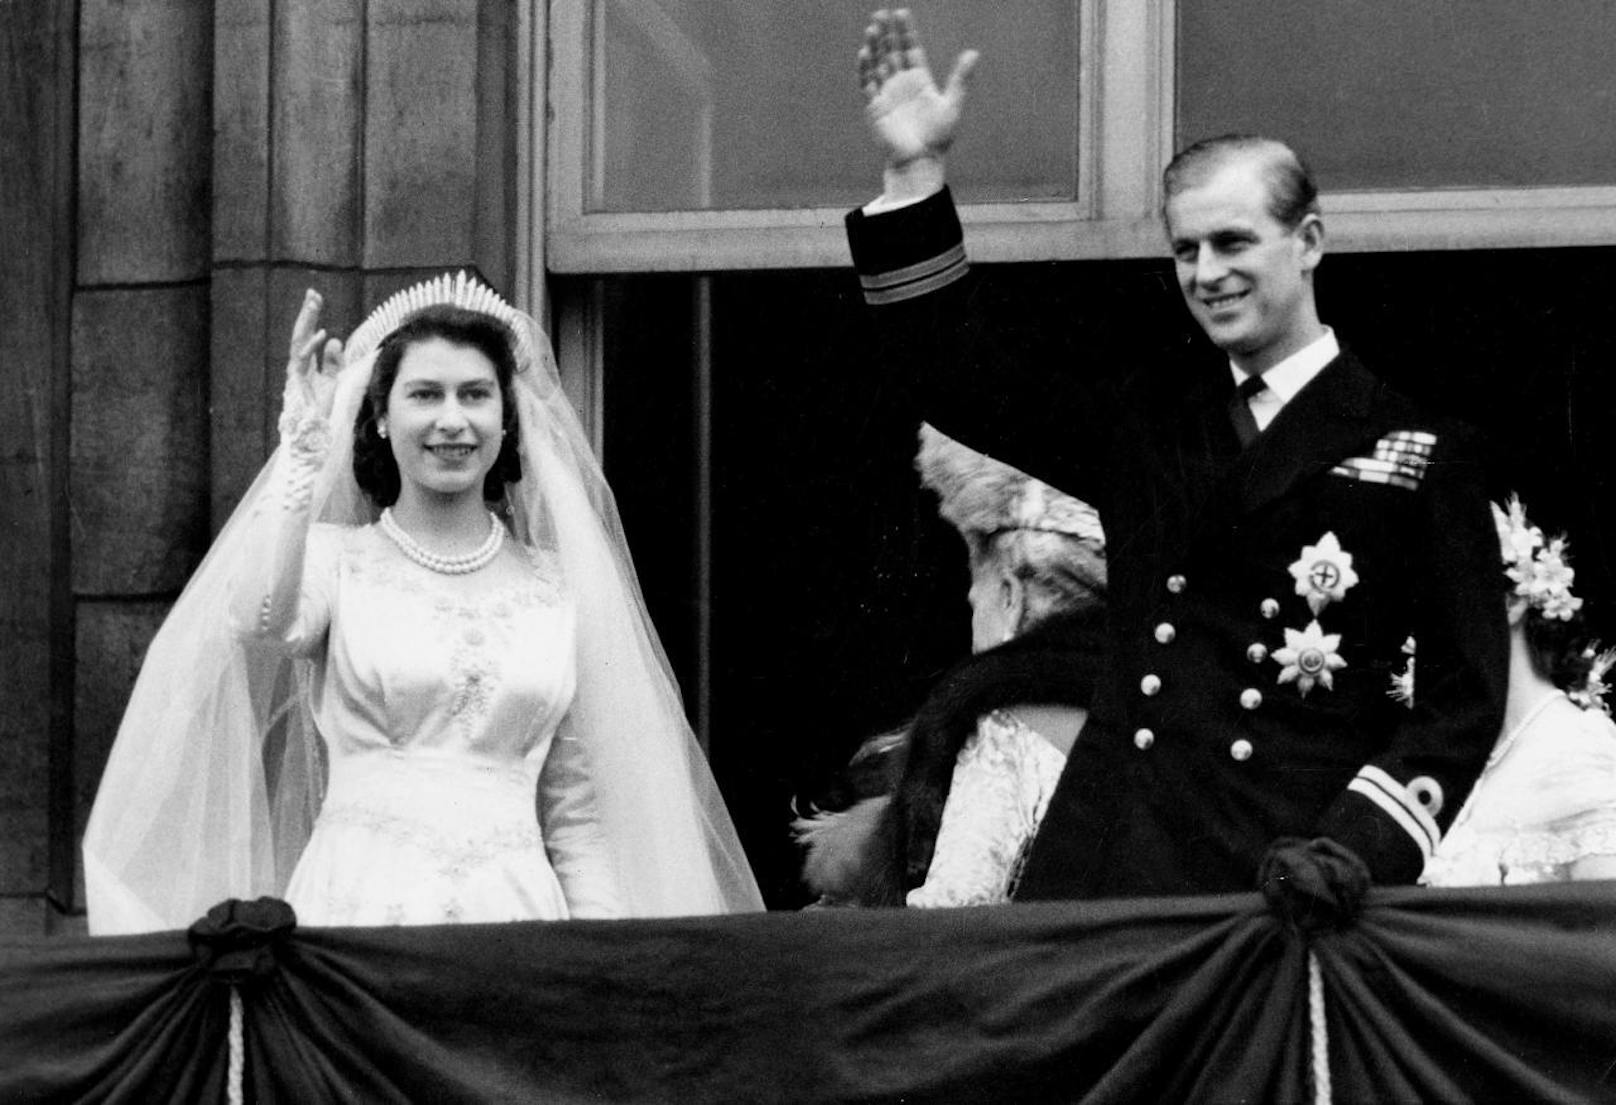 Als ein Fotograf bei einem Event 2015 einmal zu lang brauchte, unterbrach der Prinz dessen Arbeit mit den Worten: "Mach doch endlich das beschissene Foto!" ("Just take the fucking picture") Bild: Prinzessin Elizabeth und Prinz Philip bei ihrer Hochzeit am 20. November 1947 in der Westminster Abbey in London